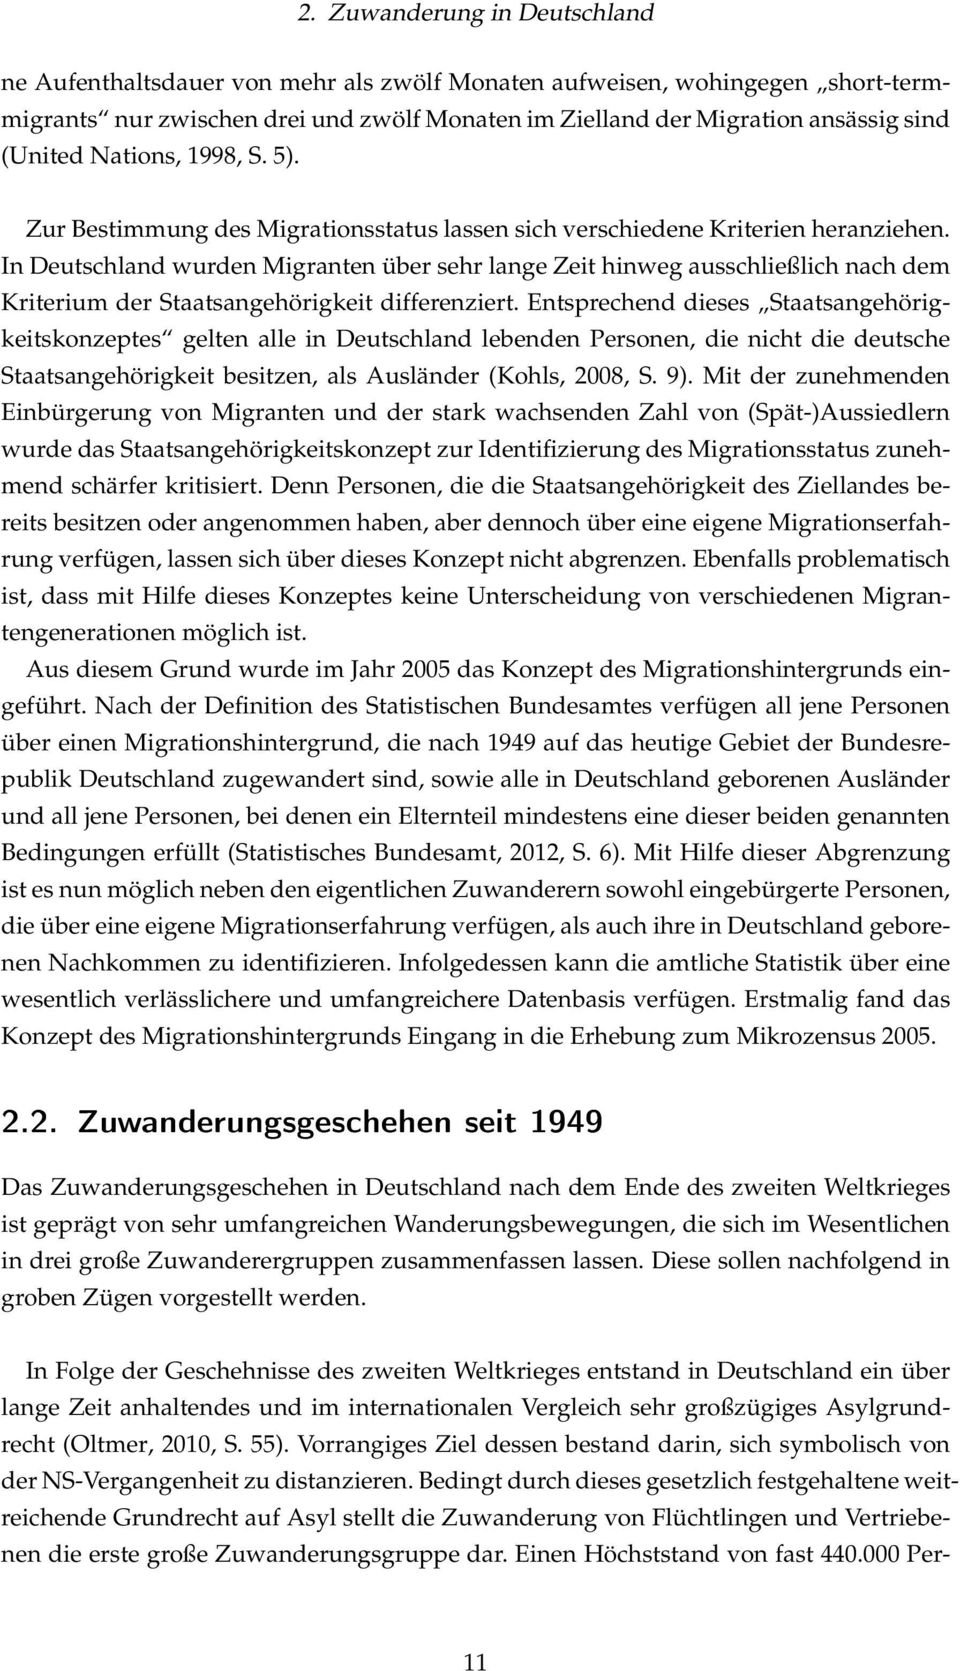 In Deutschland wurden Migranten über sehr lange Zeit hinweg ausschließlich nach dem Kriterium der Staatsangehörigkeit differenziert.